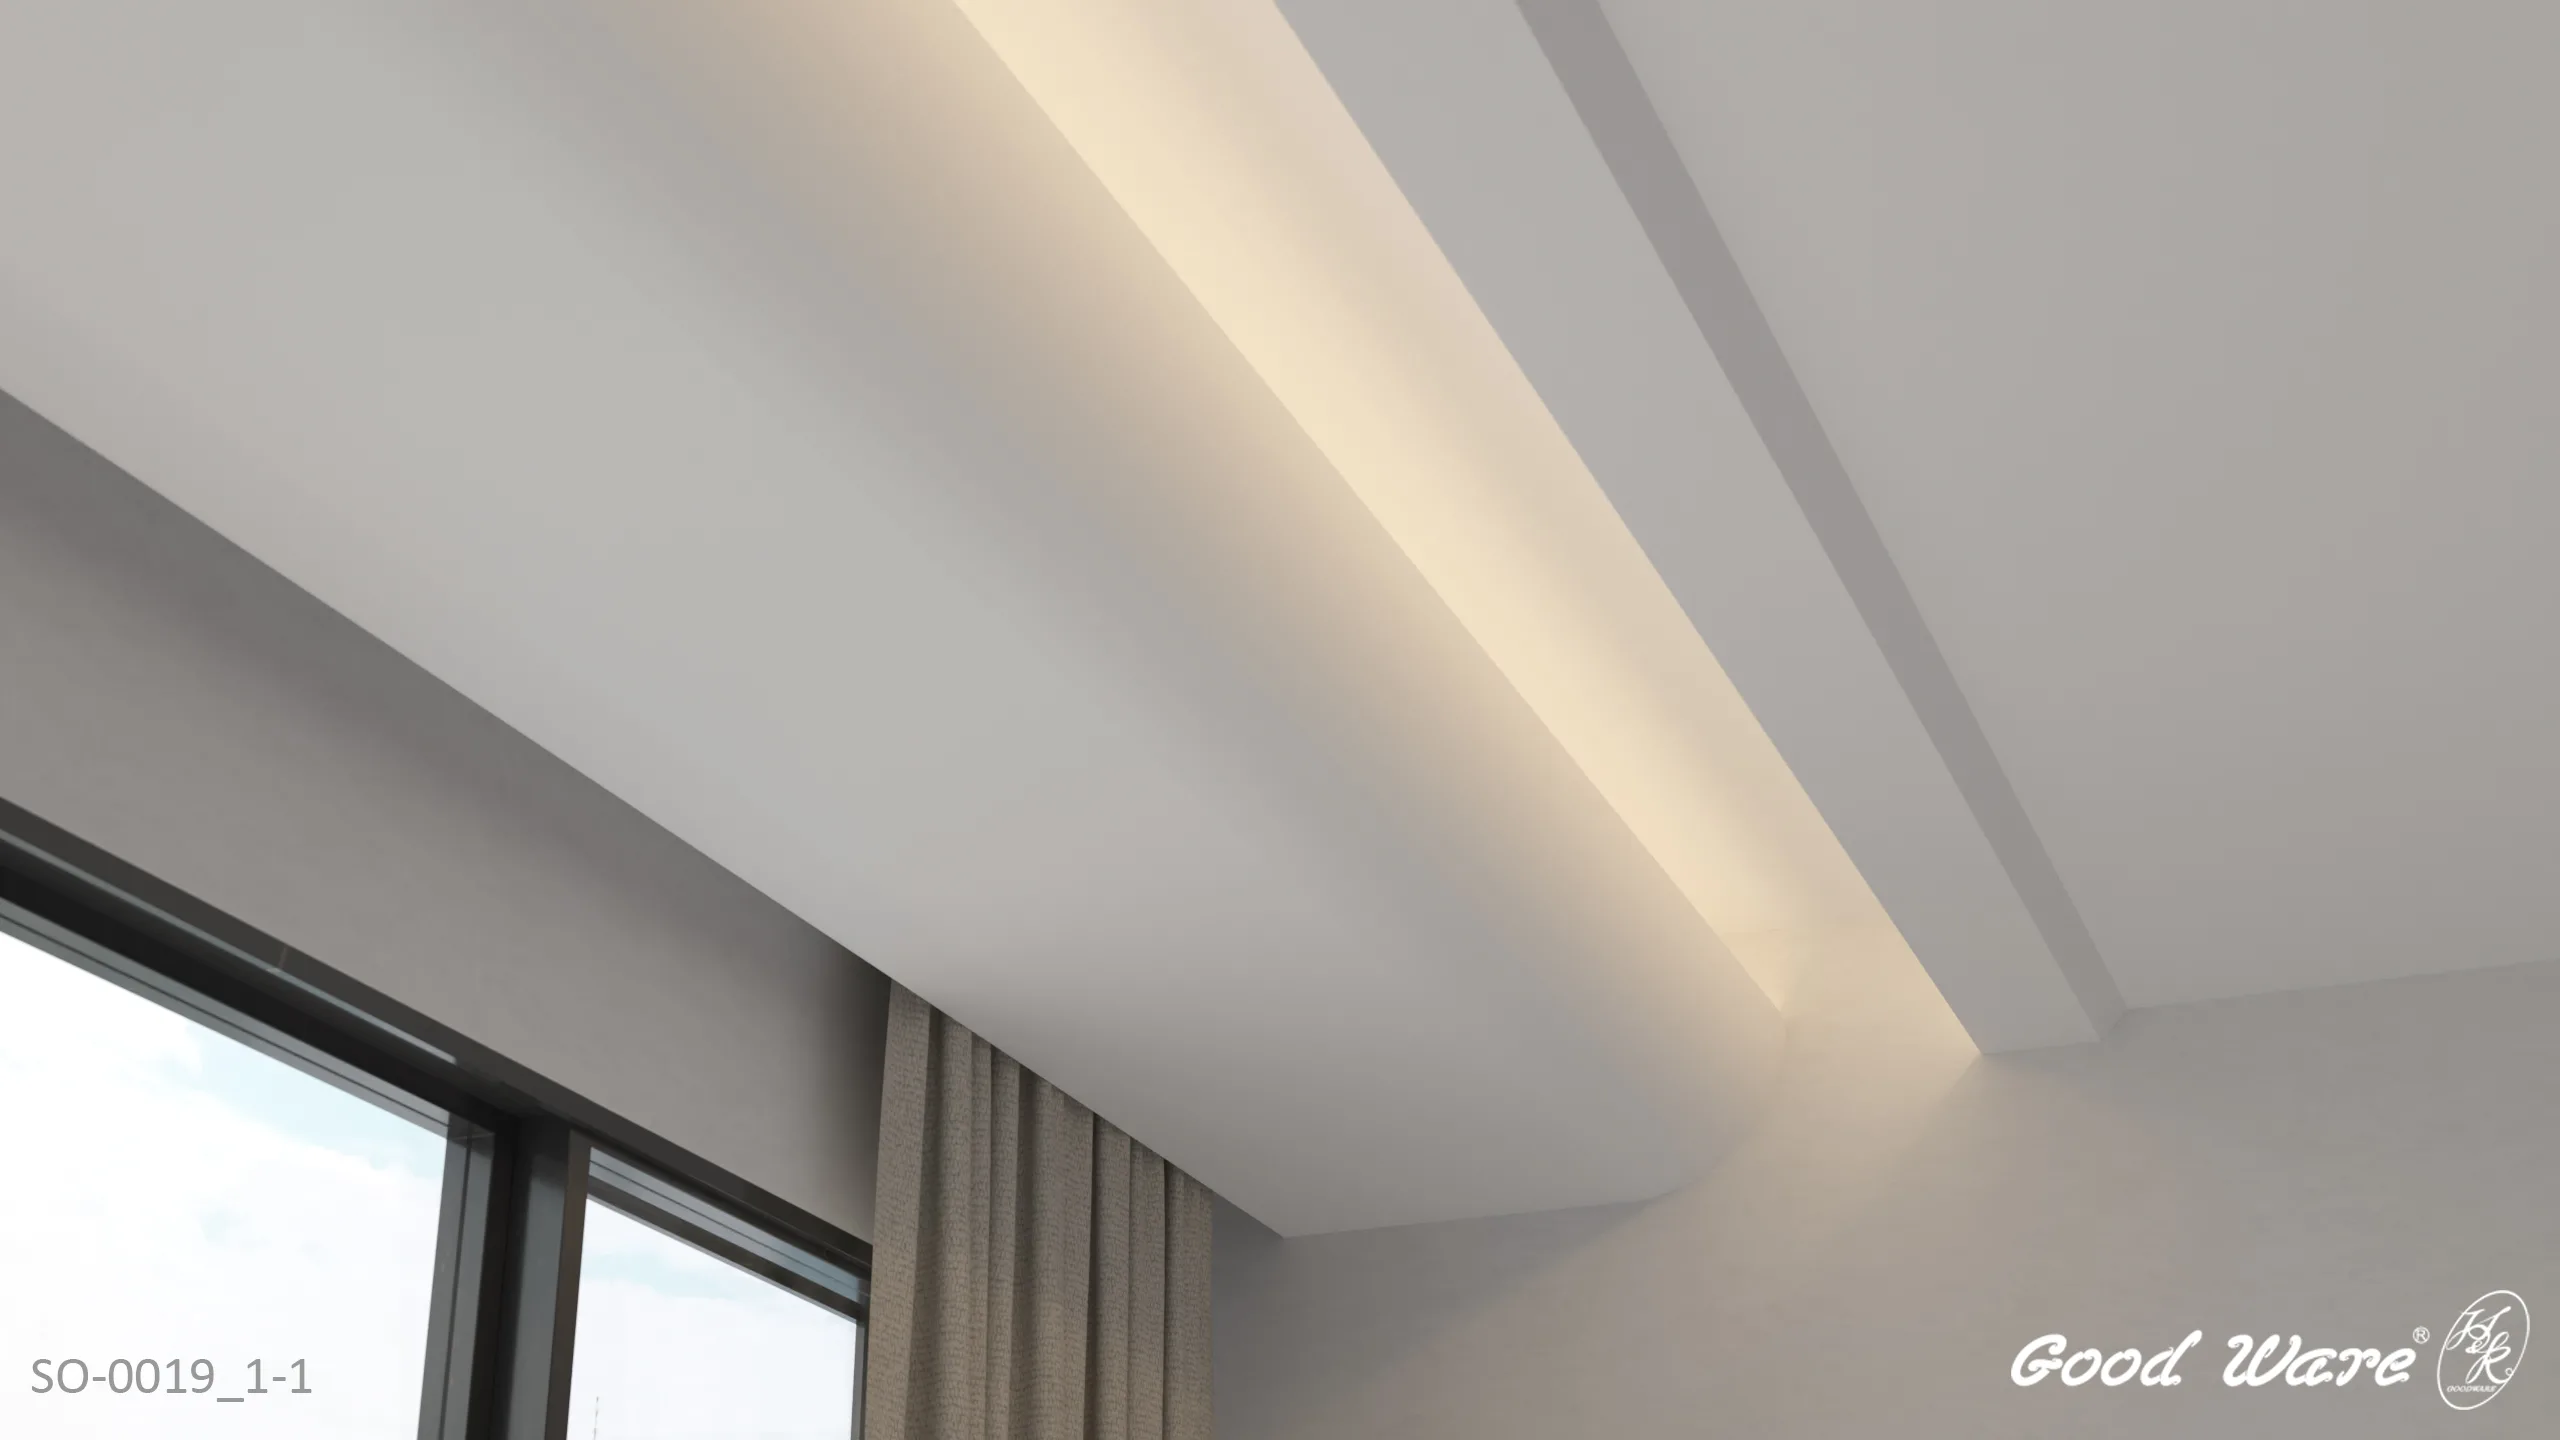 弧形設計結合間接照明用於天花板施作效果